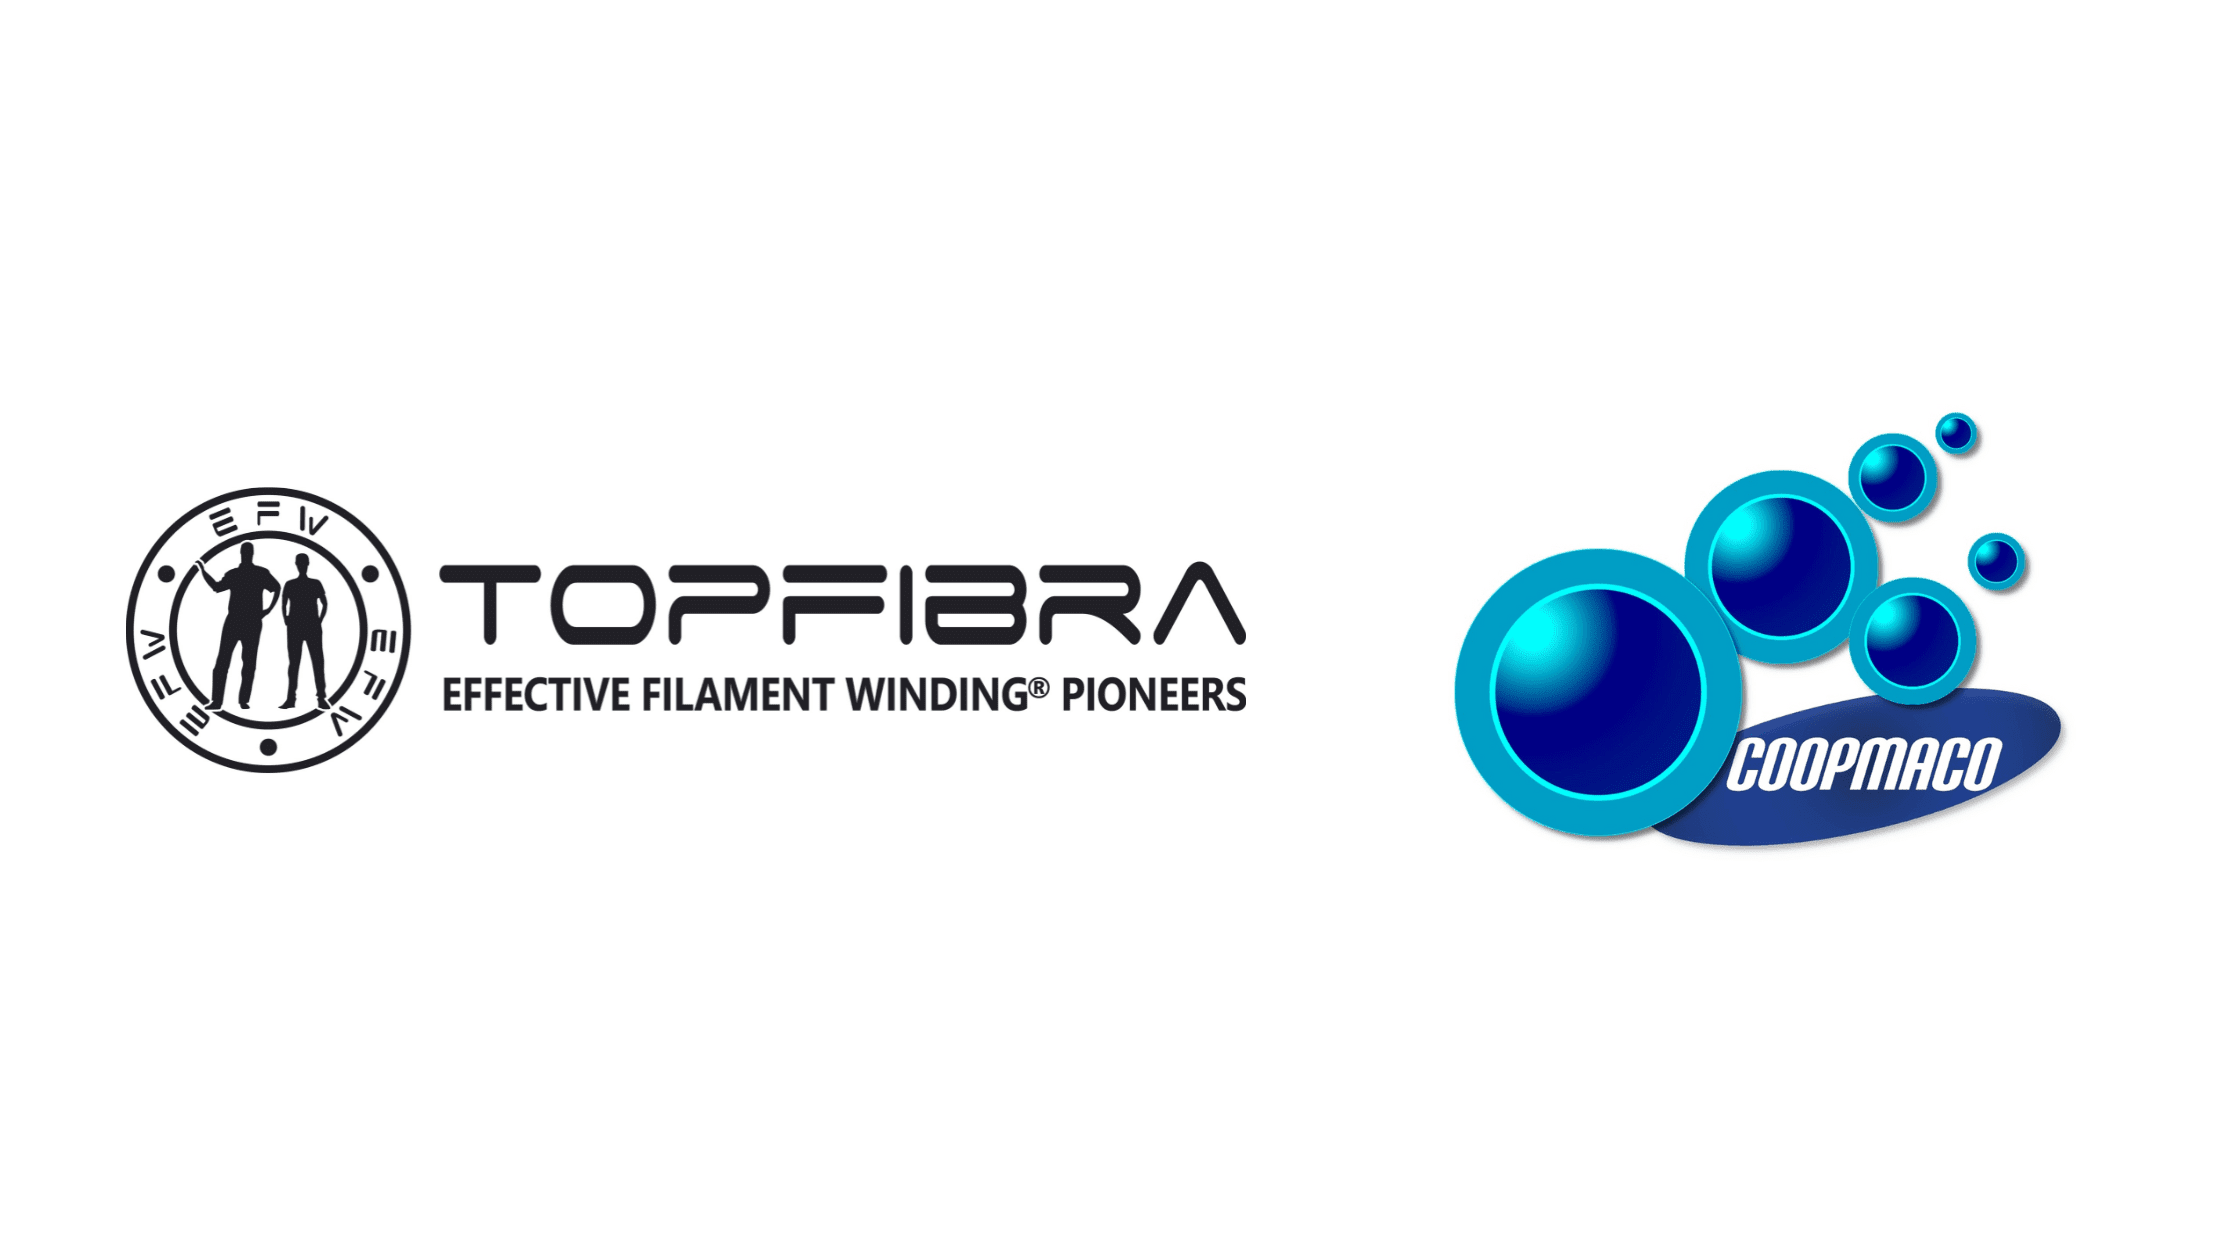 TOPFIBRA is Sponsor of Coopmaco Brazil